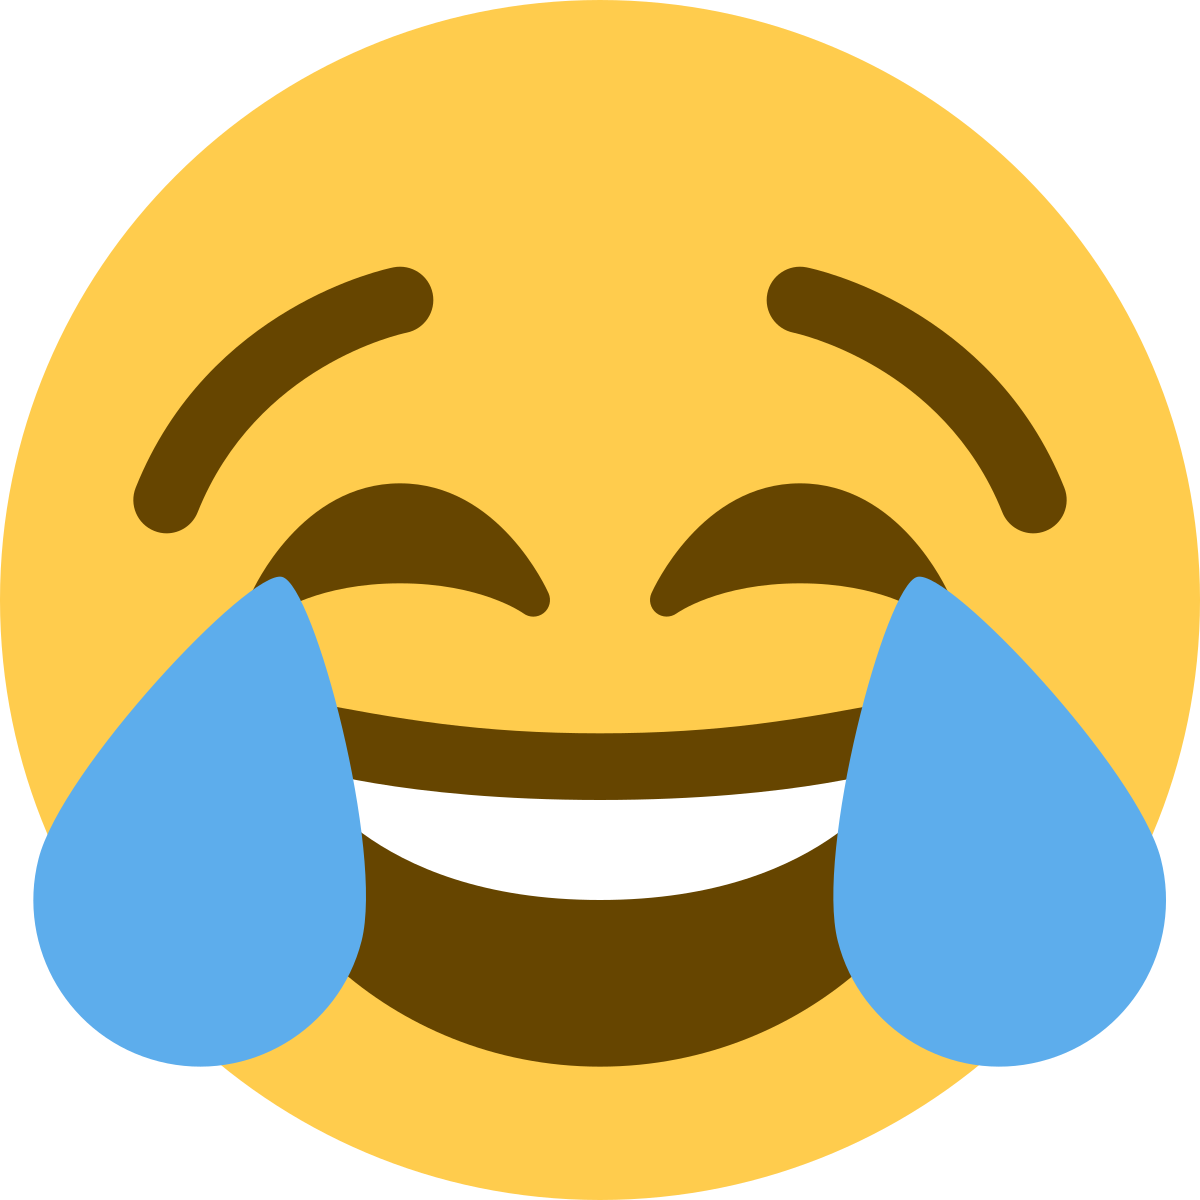 A laughing emoji